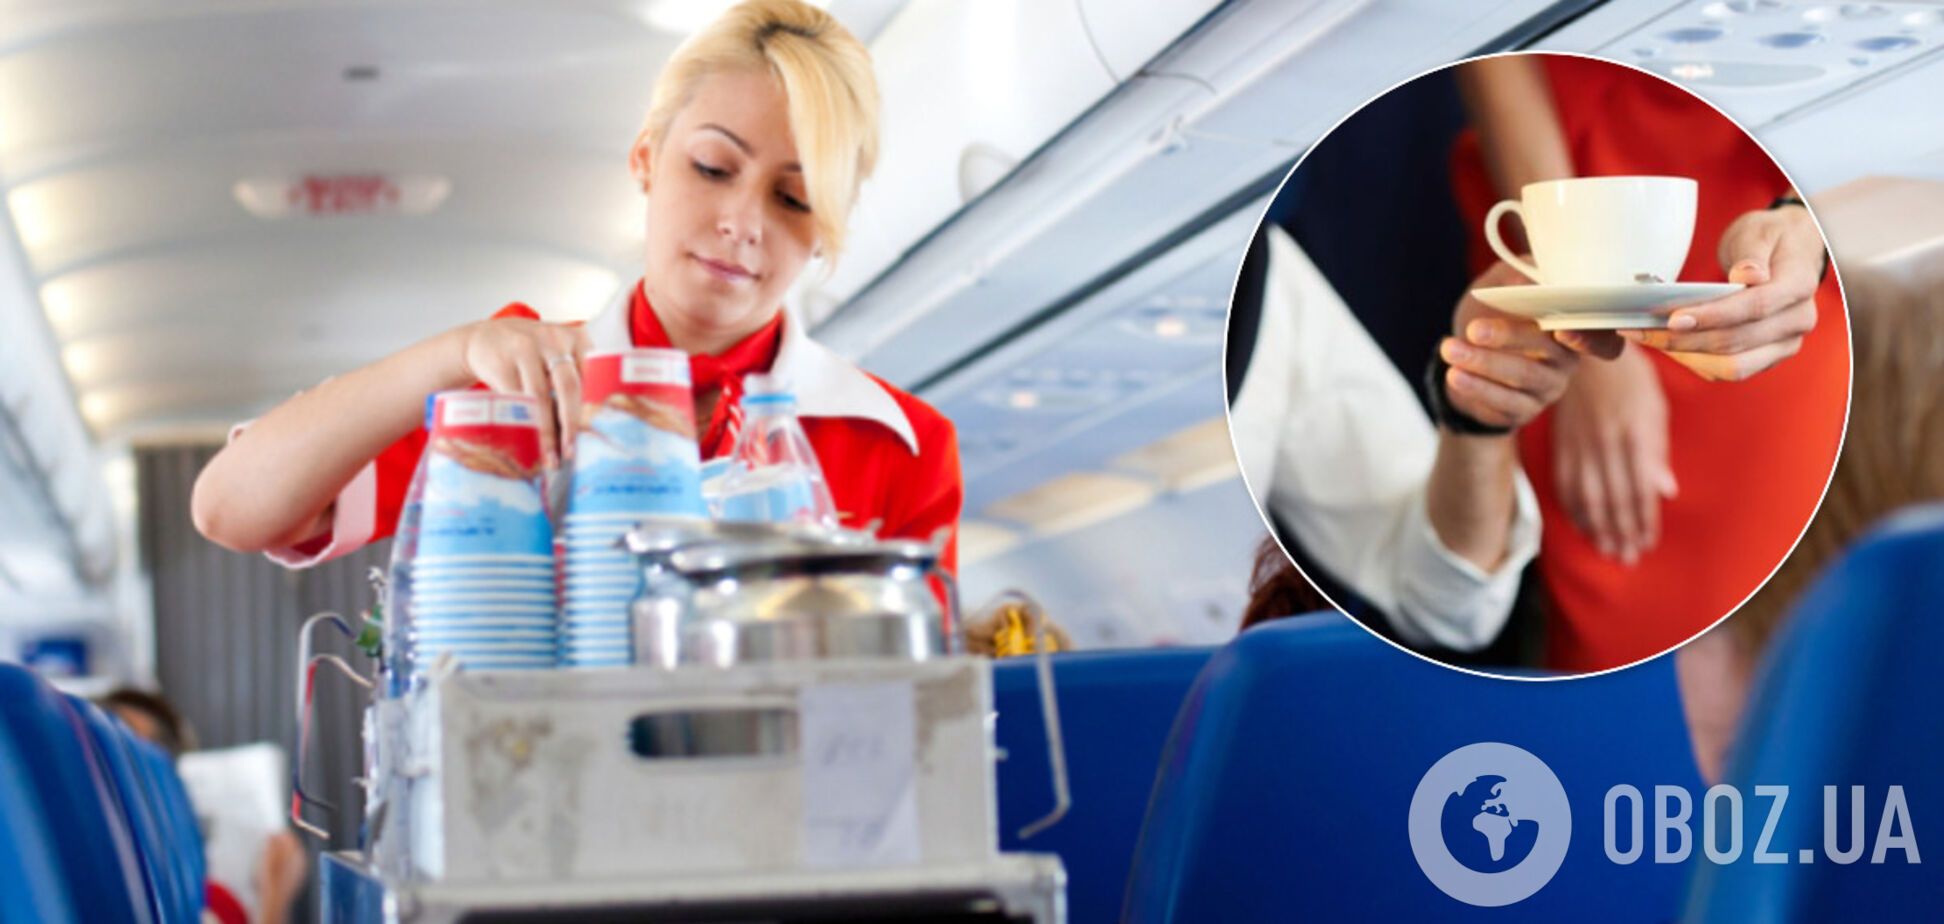 Лучше не пить: стюардесса раскрыла правду о кофе и чае на борту самолета